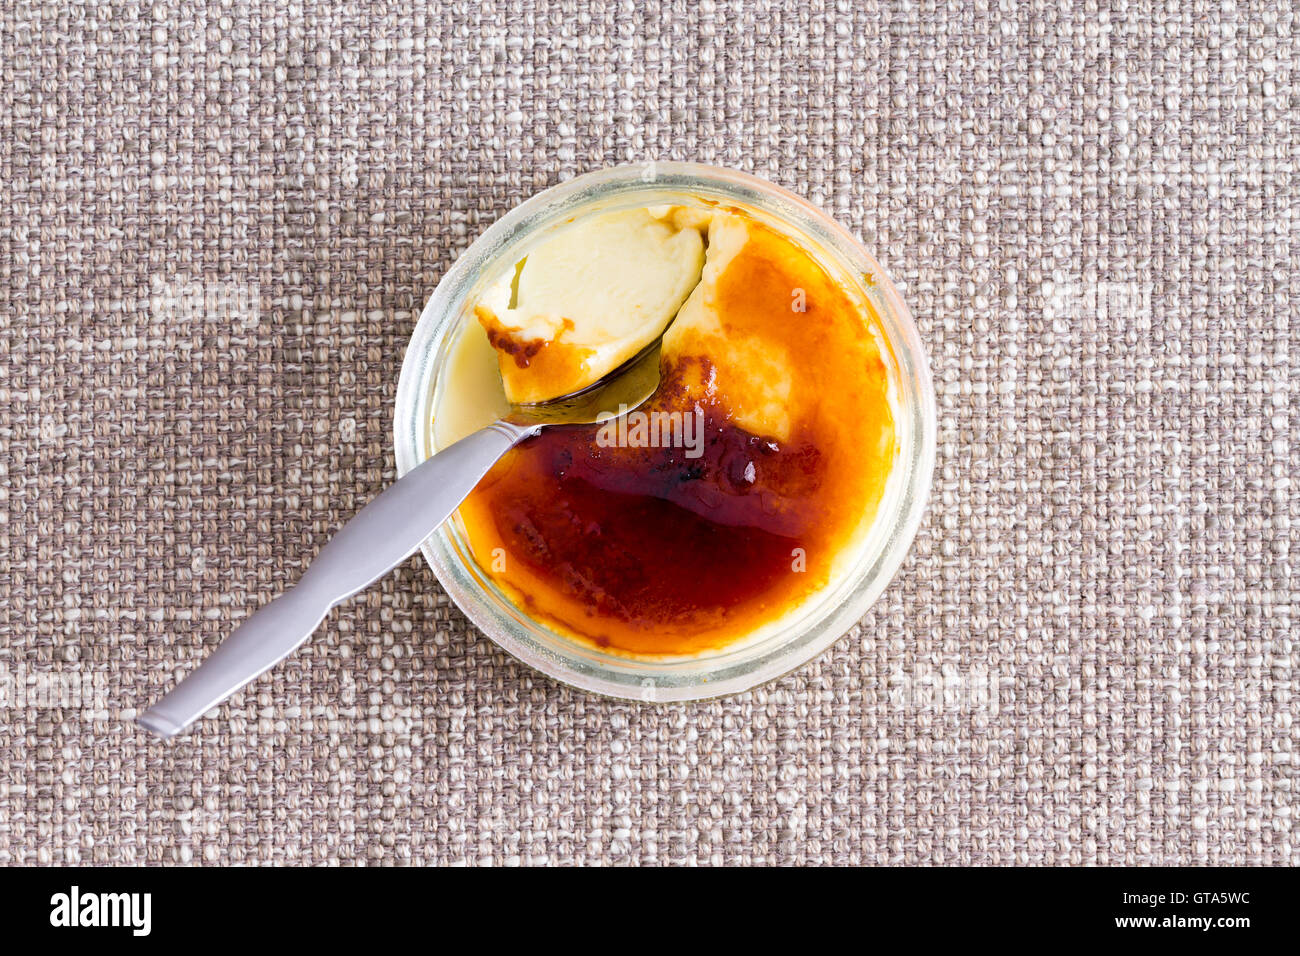 Teilweise gegessen gebräunt Crème brûlée mit silbernen Löffel gegen einen strukturierten Hintergrund Stockfoto